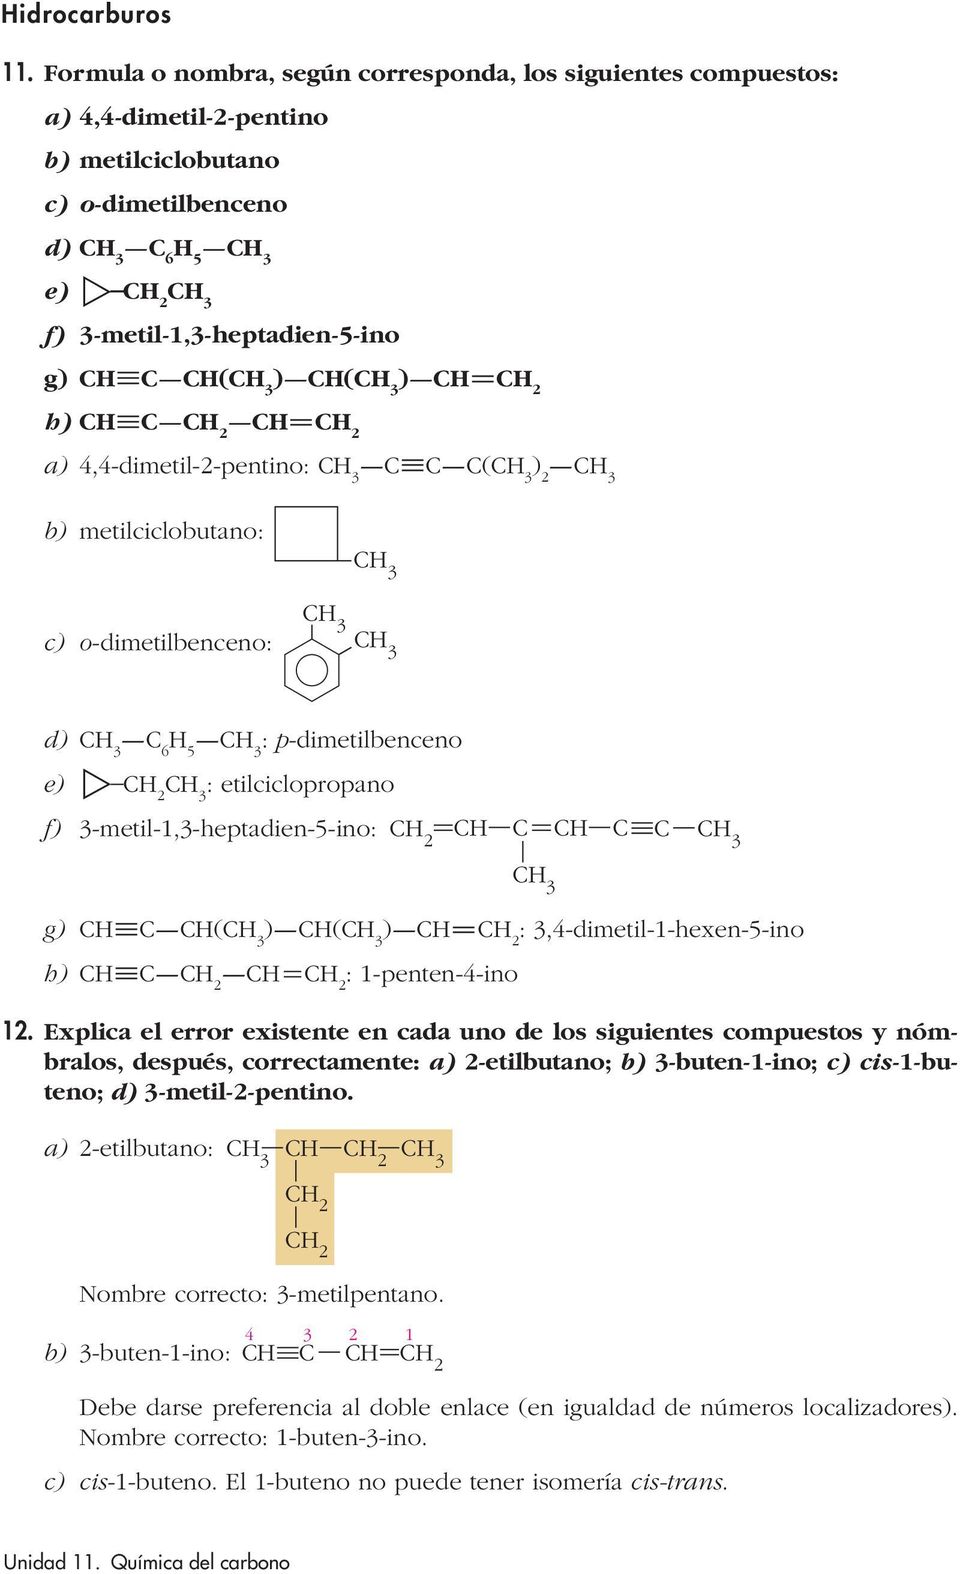 4,4-dimetil-2-pentino: ( b) metilciclobutano: c) o-dimetilbenceno: d) 6 5 : p-dimetilbenceno e) : etilciclopropano 2 3 f) 3-metil-1,3-heptadien-5-ino: g) ( ) ( ) : 3,4-dimetil-1-hexen-5-ino h) :